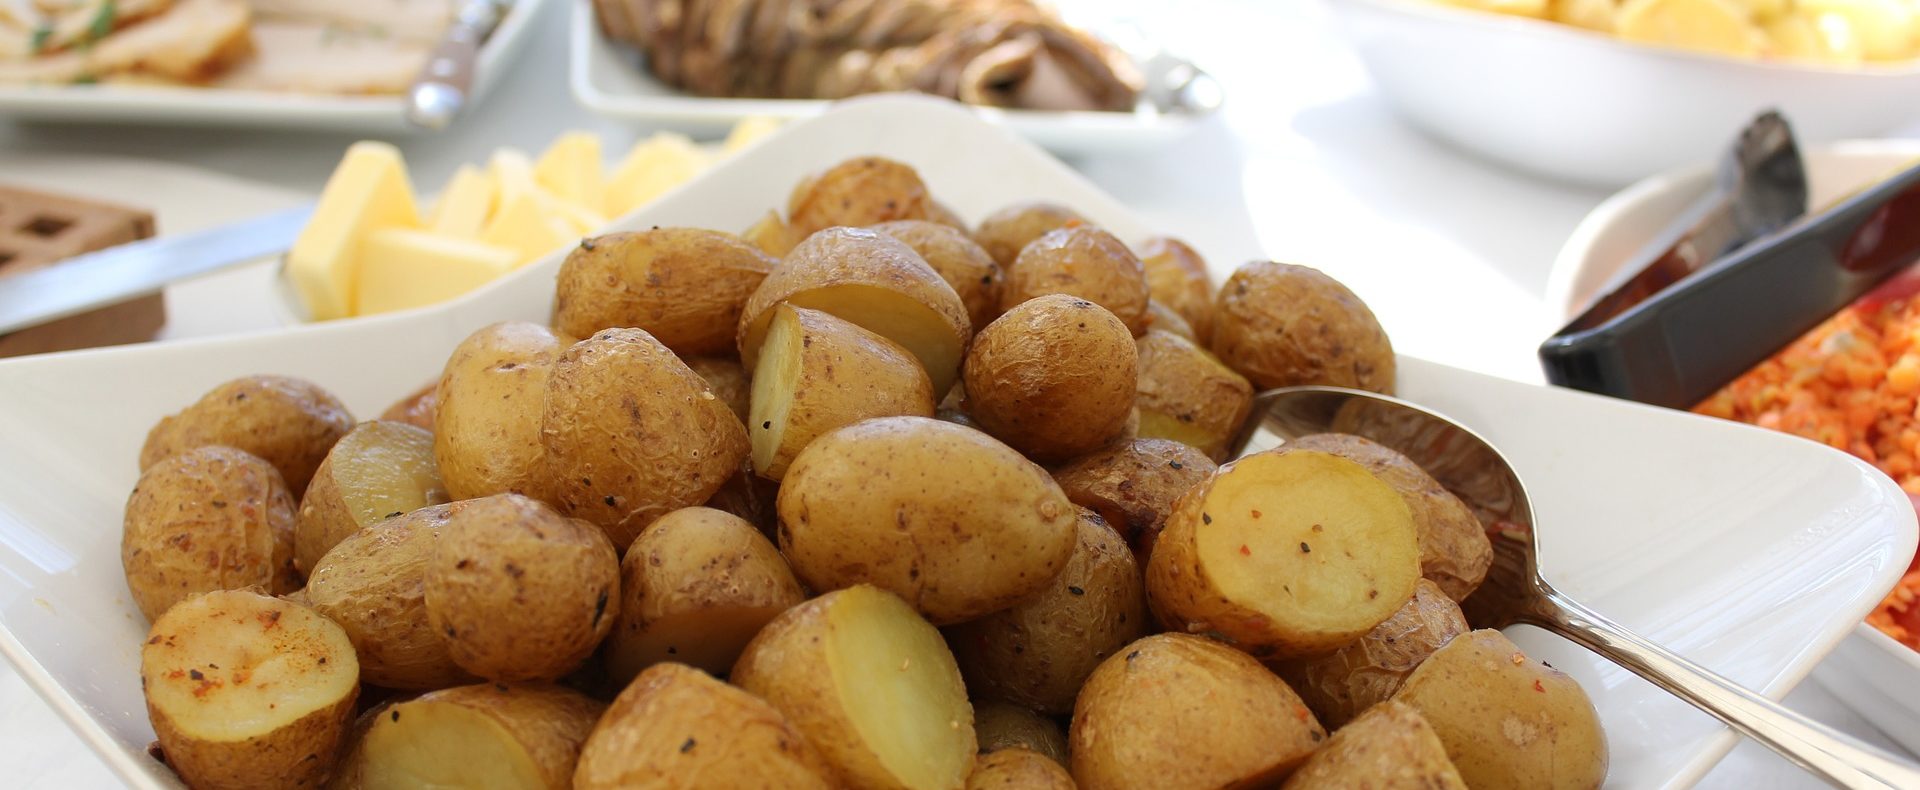 Catering / Partyservice - Warme Speisen: Buffet mit Ofenkartoffeln